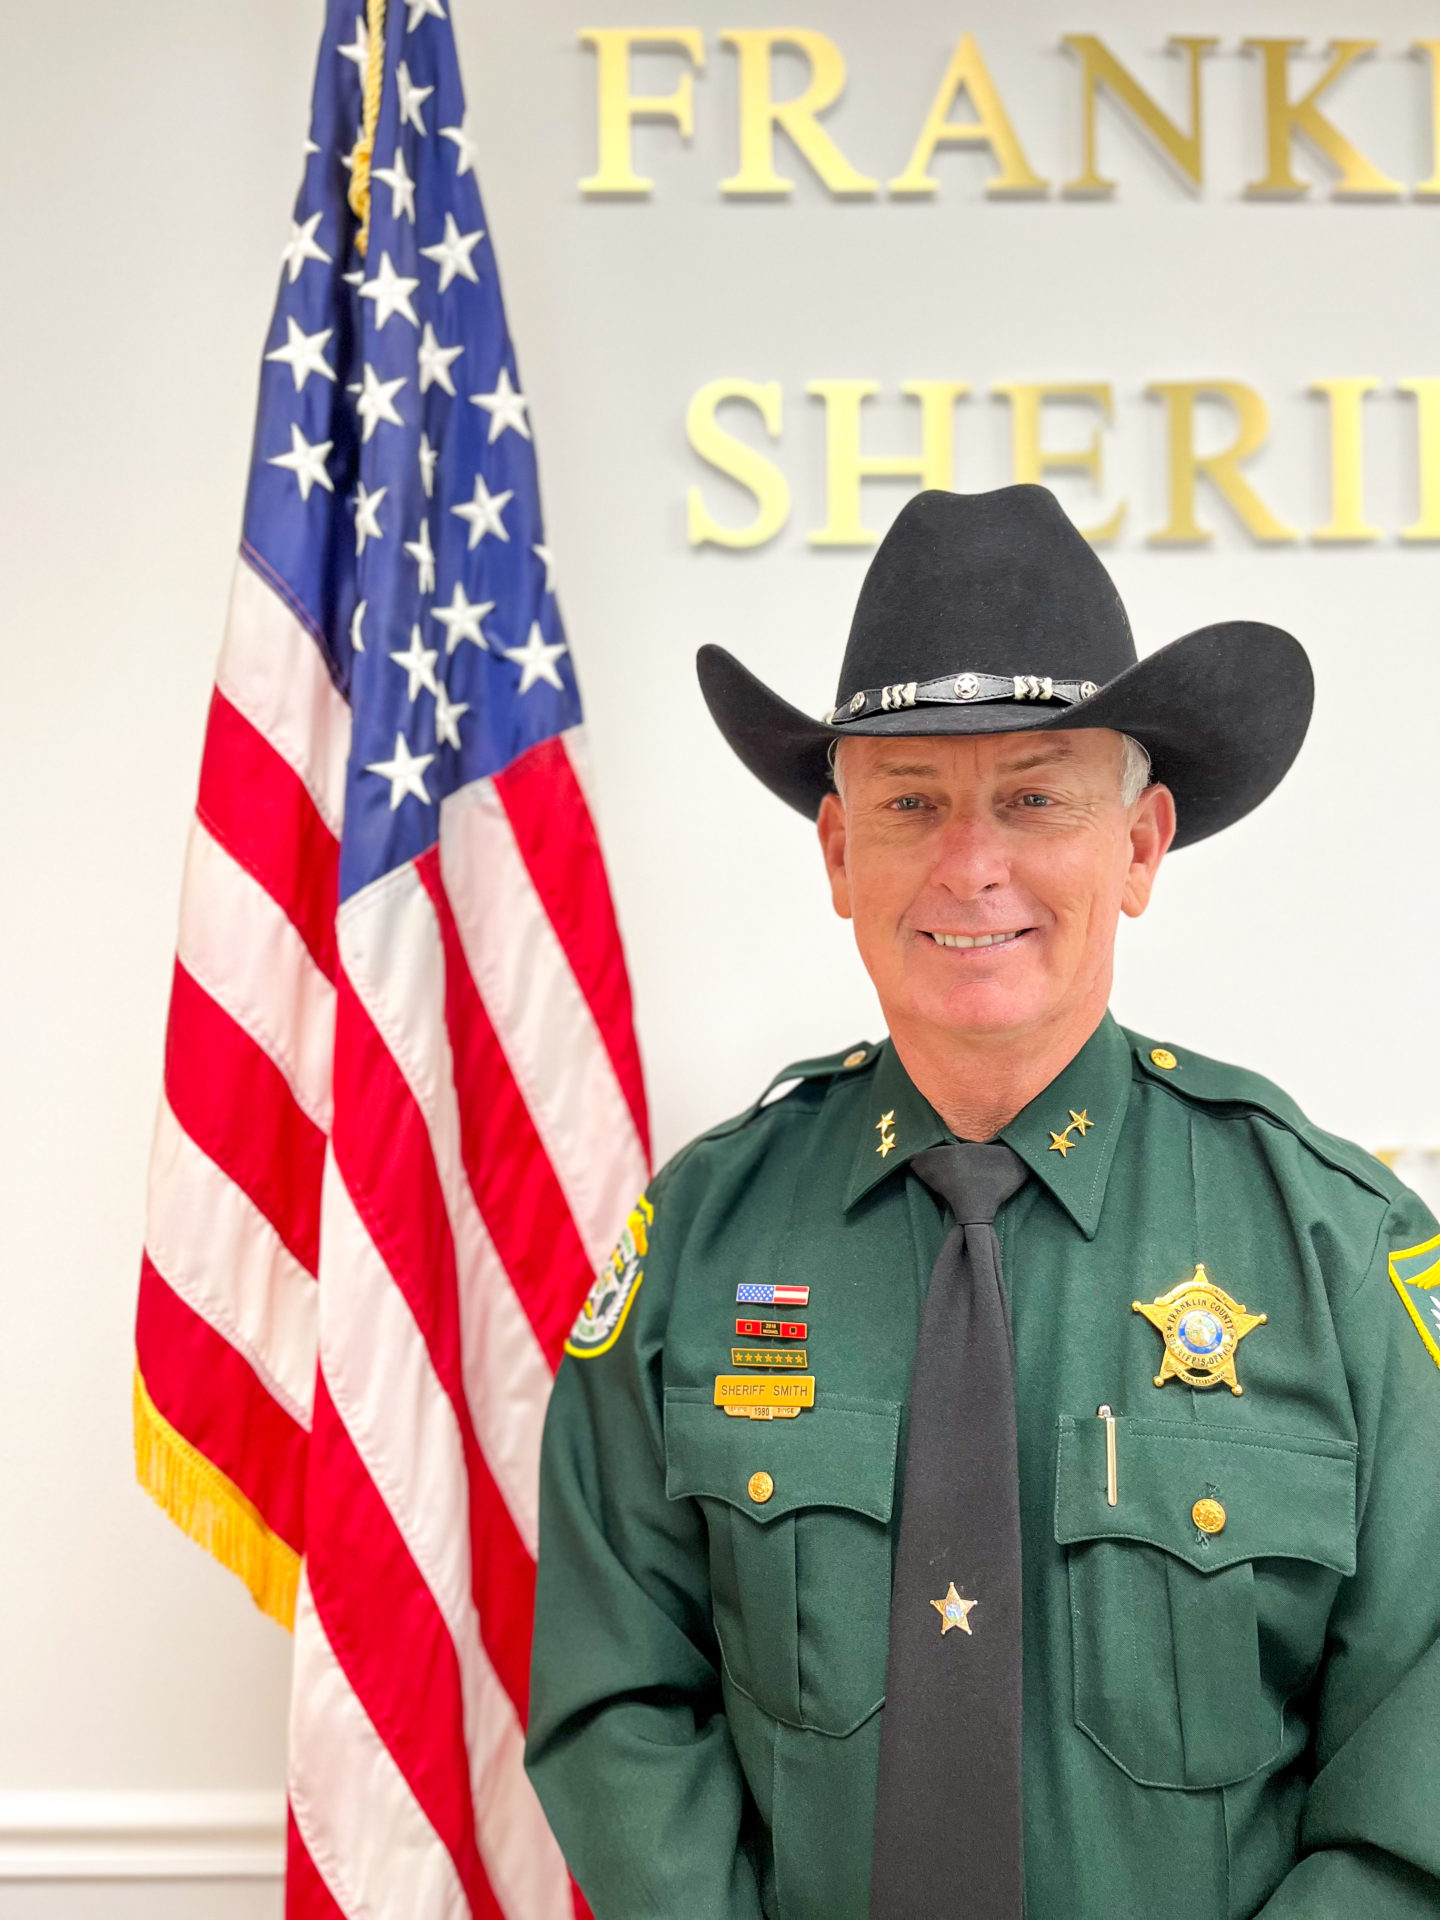 Franklin County Sheriff's Office - Sheriff AJ Tony Smith - Florida